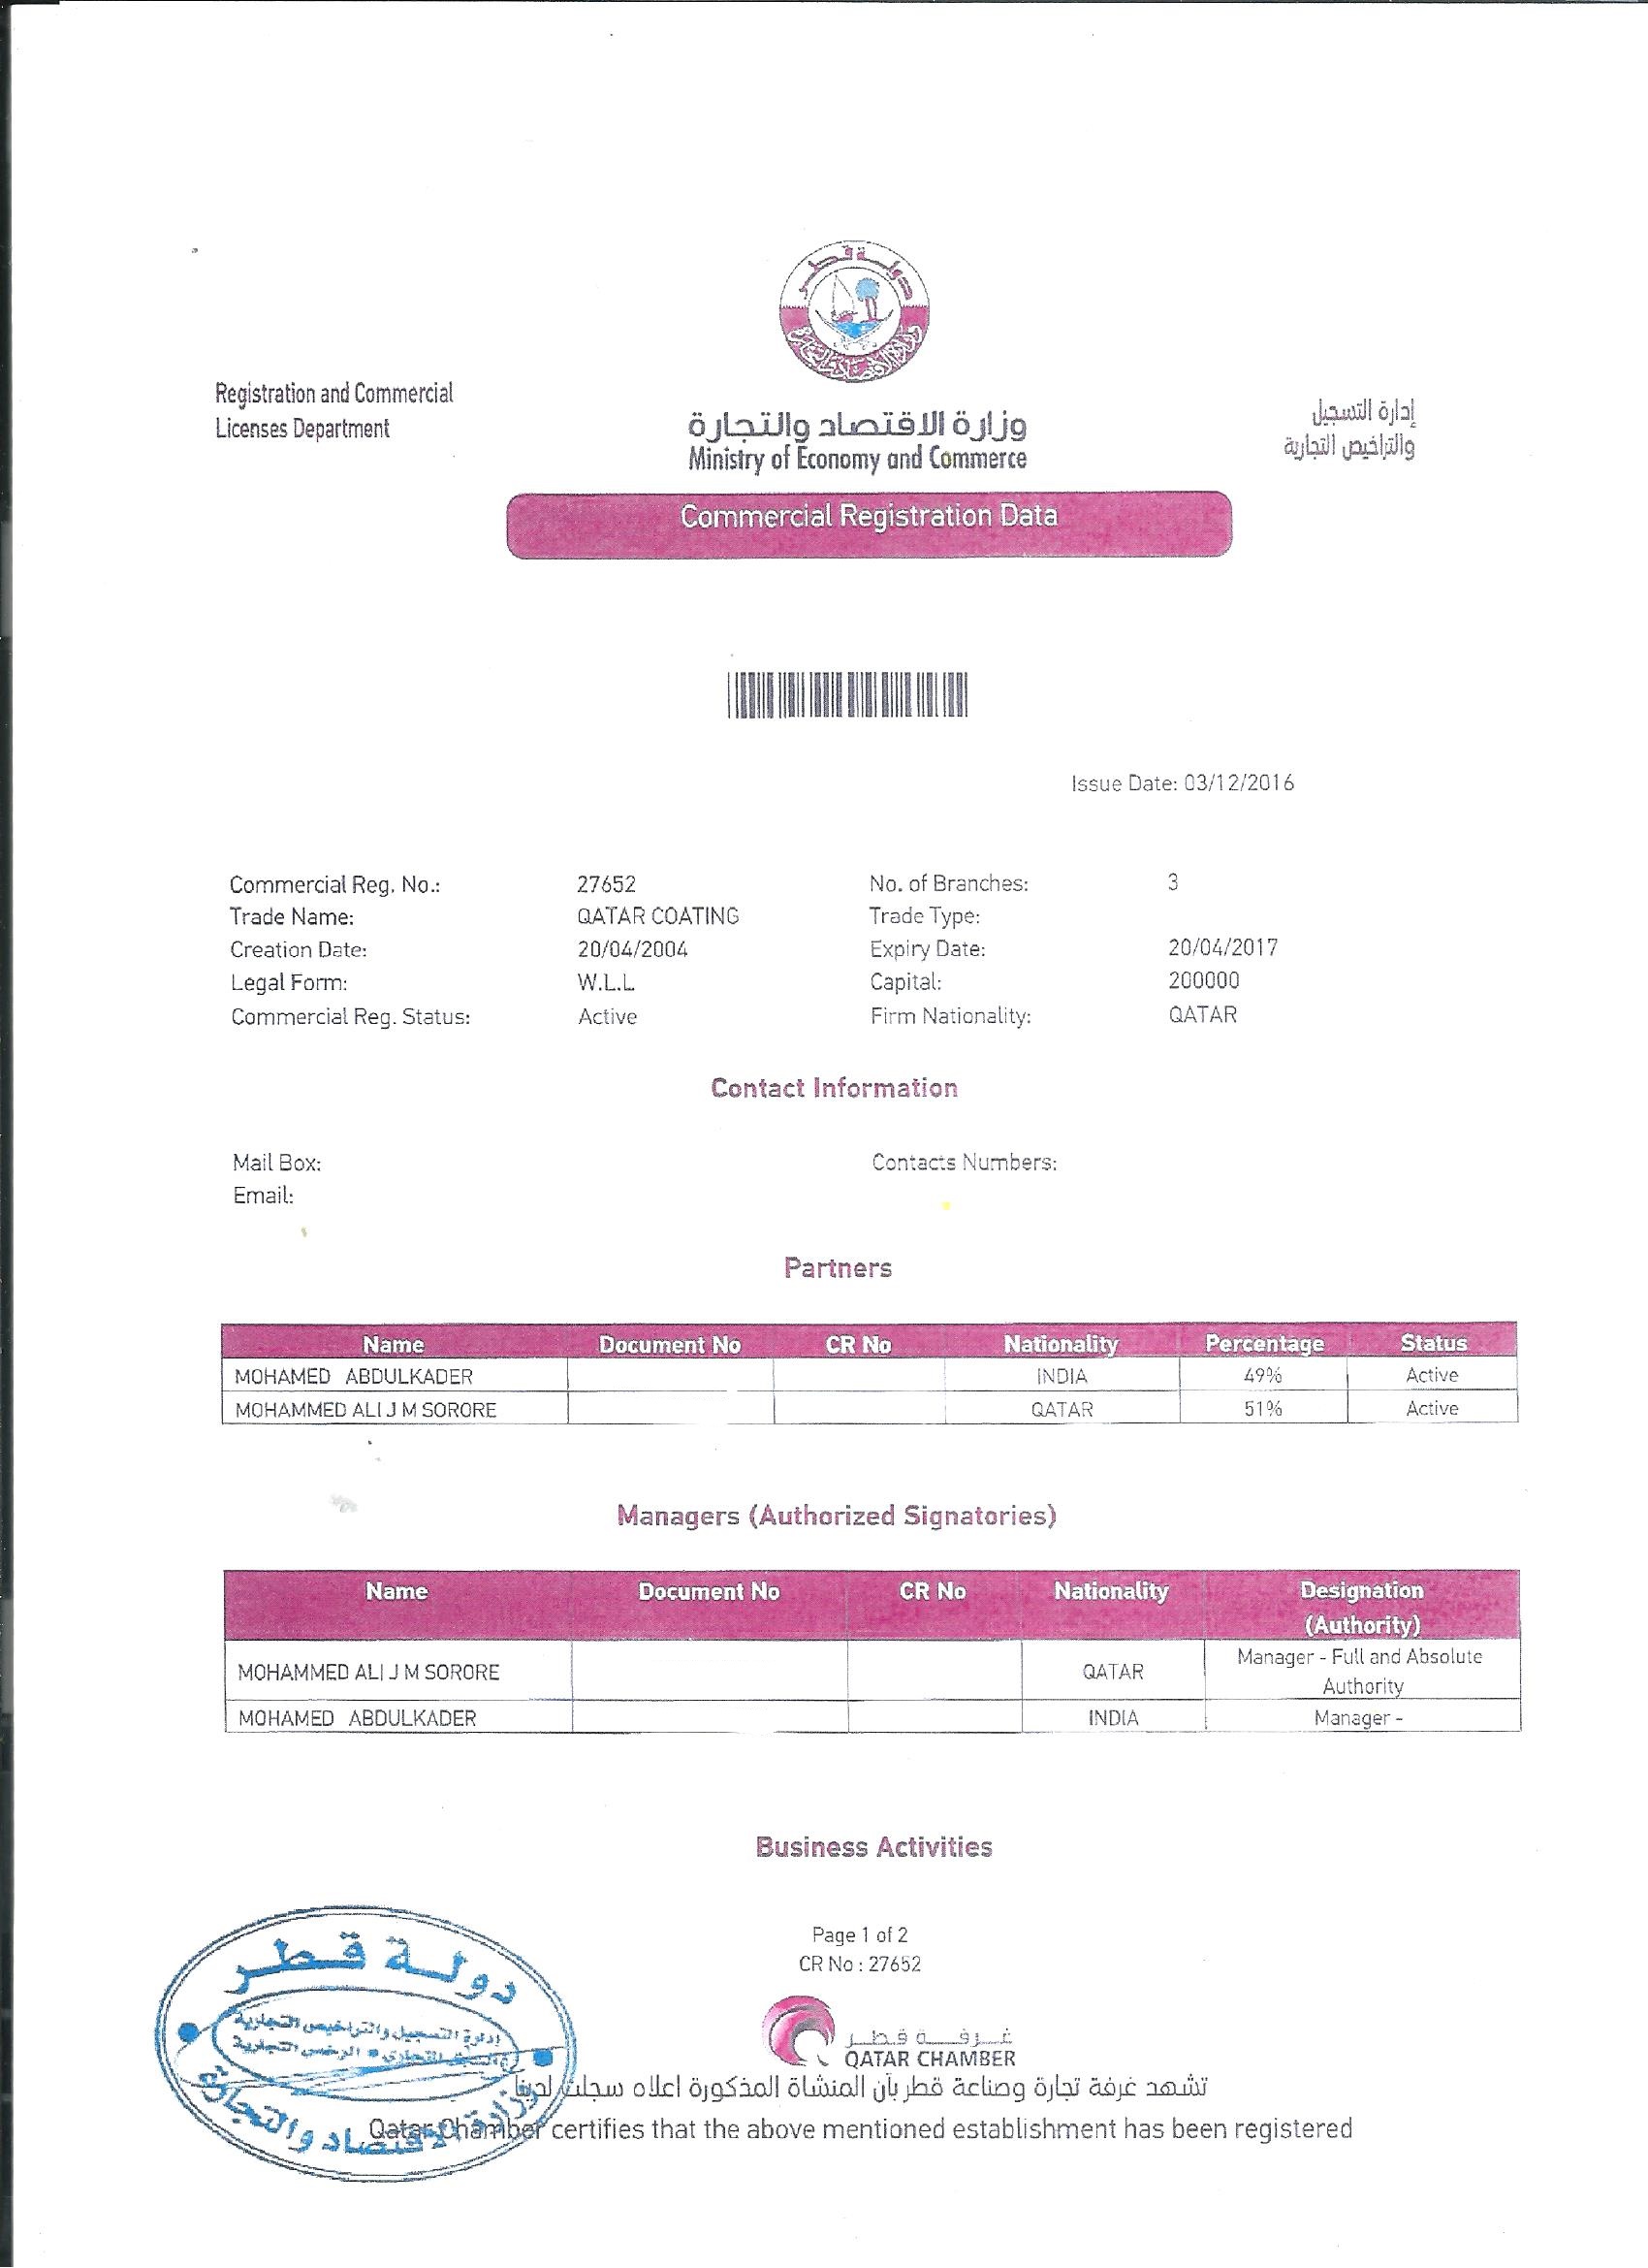 Company Profile Qatar Coating Co Suroor Baliyoor